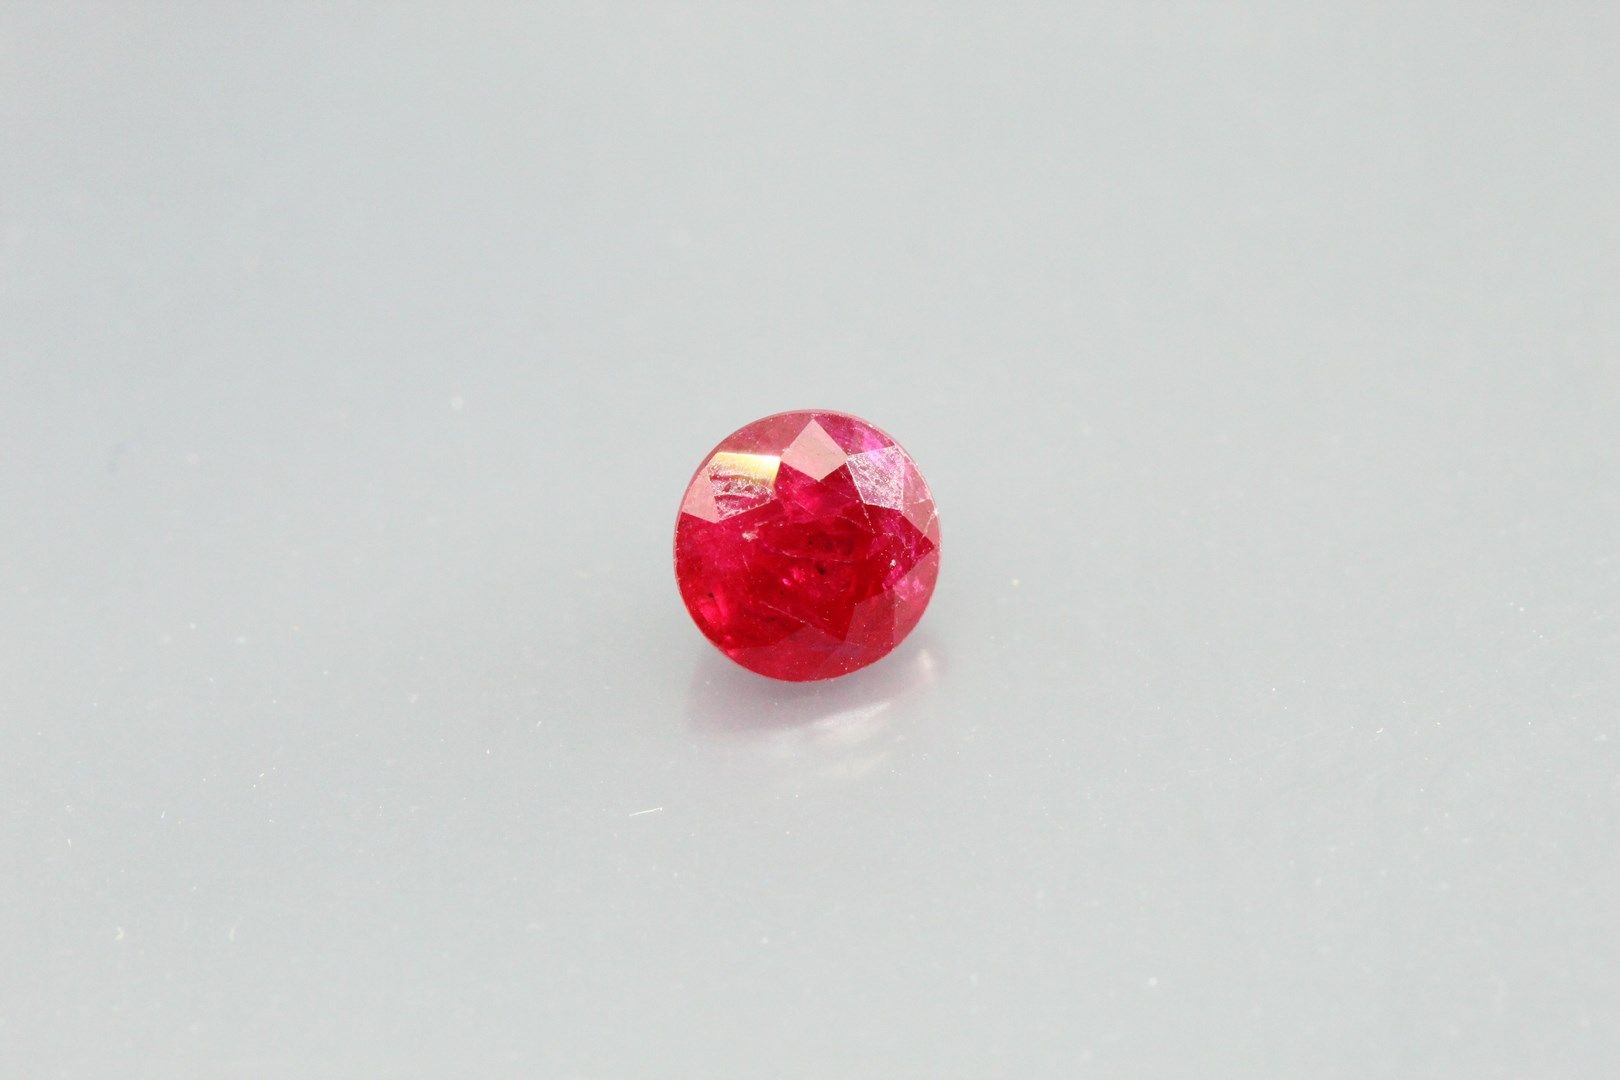 Null 圆形红宝石在纸上。

重量：1.09克拉。

纹理和剥落的平面。